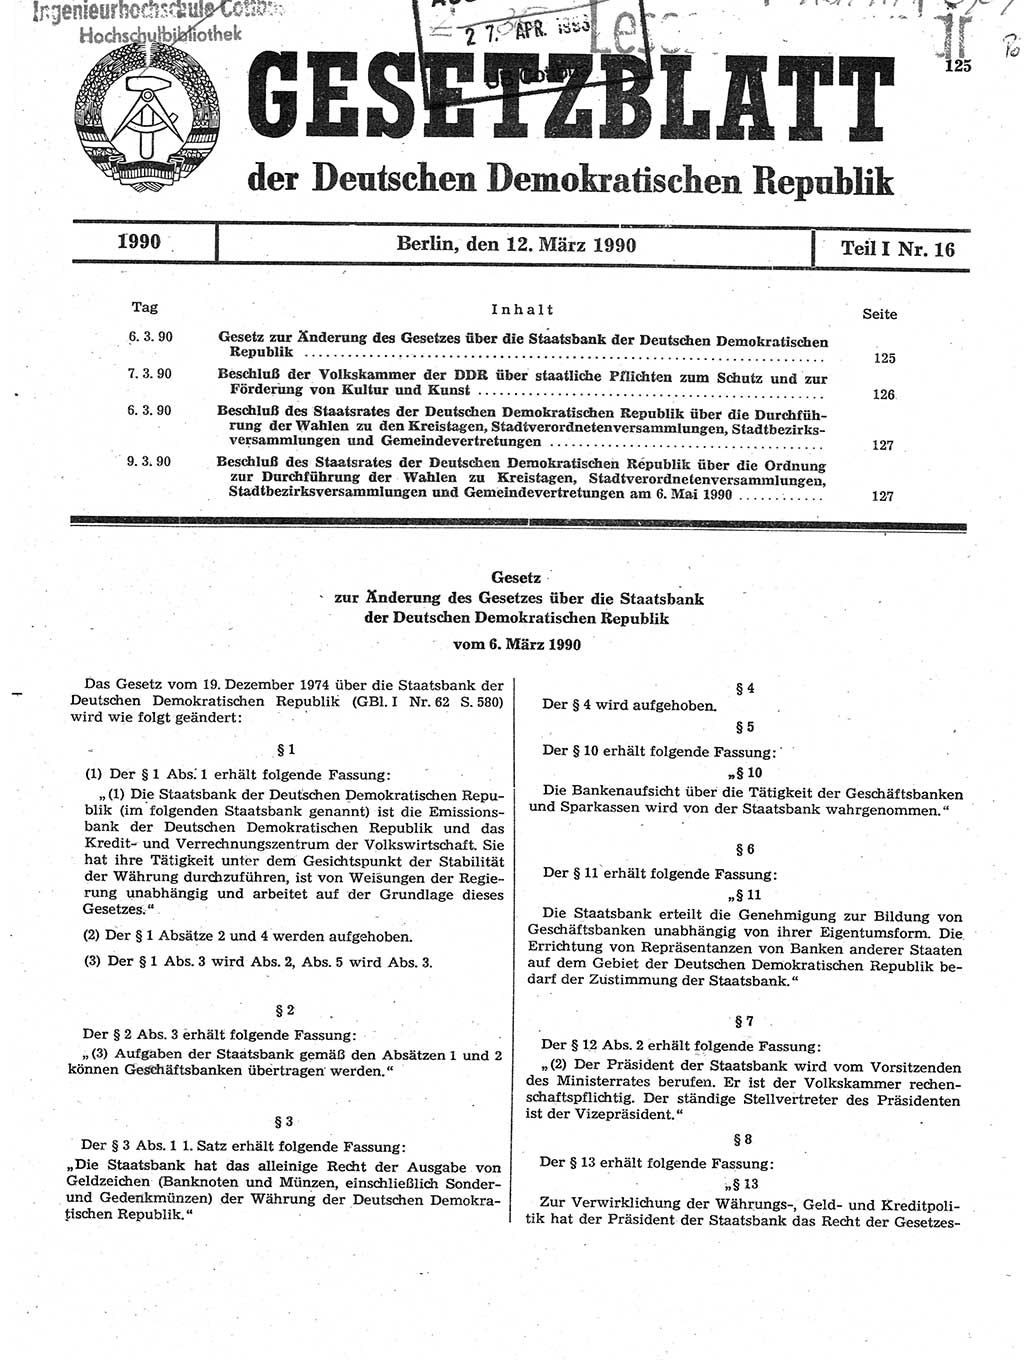 Gesetzblatt (GBl.) der Deutschen Demokratischen Republik (DDR) Teil Ⅰ 1990, Seite 125 (GBl. DDR Ⅰ 1990, S. 125)